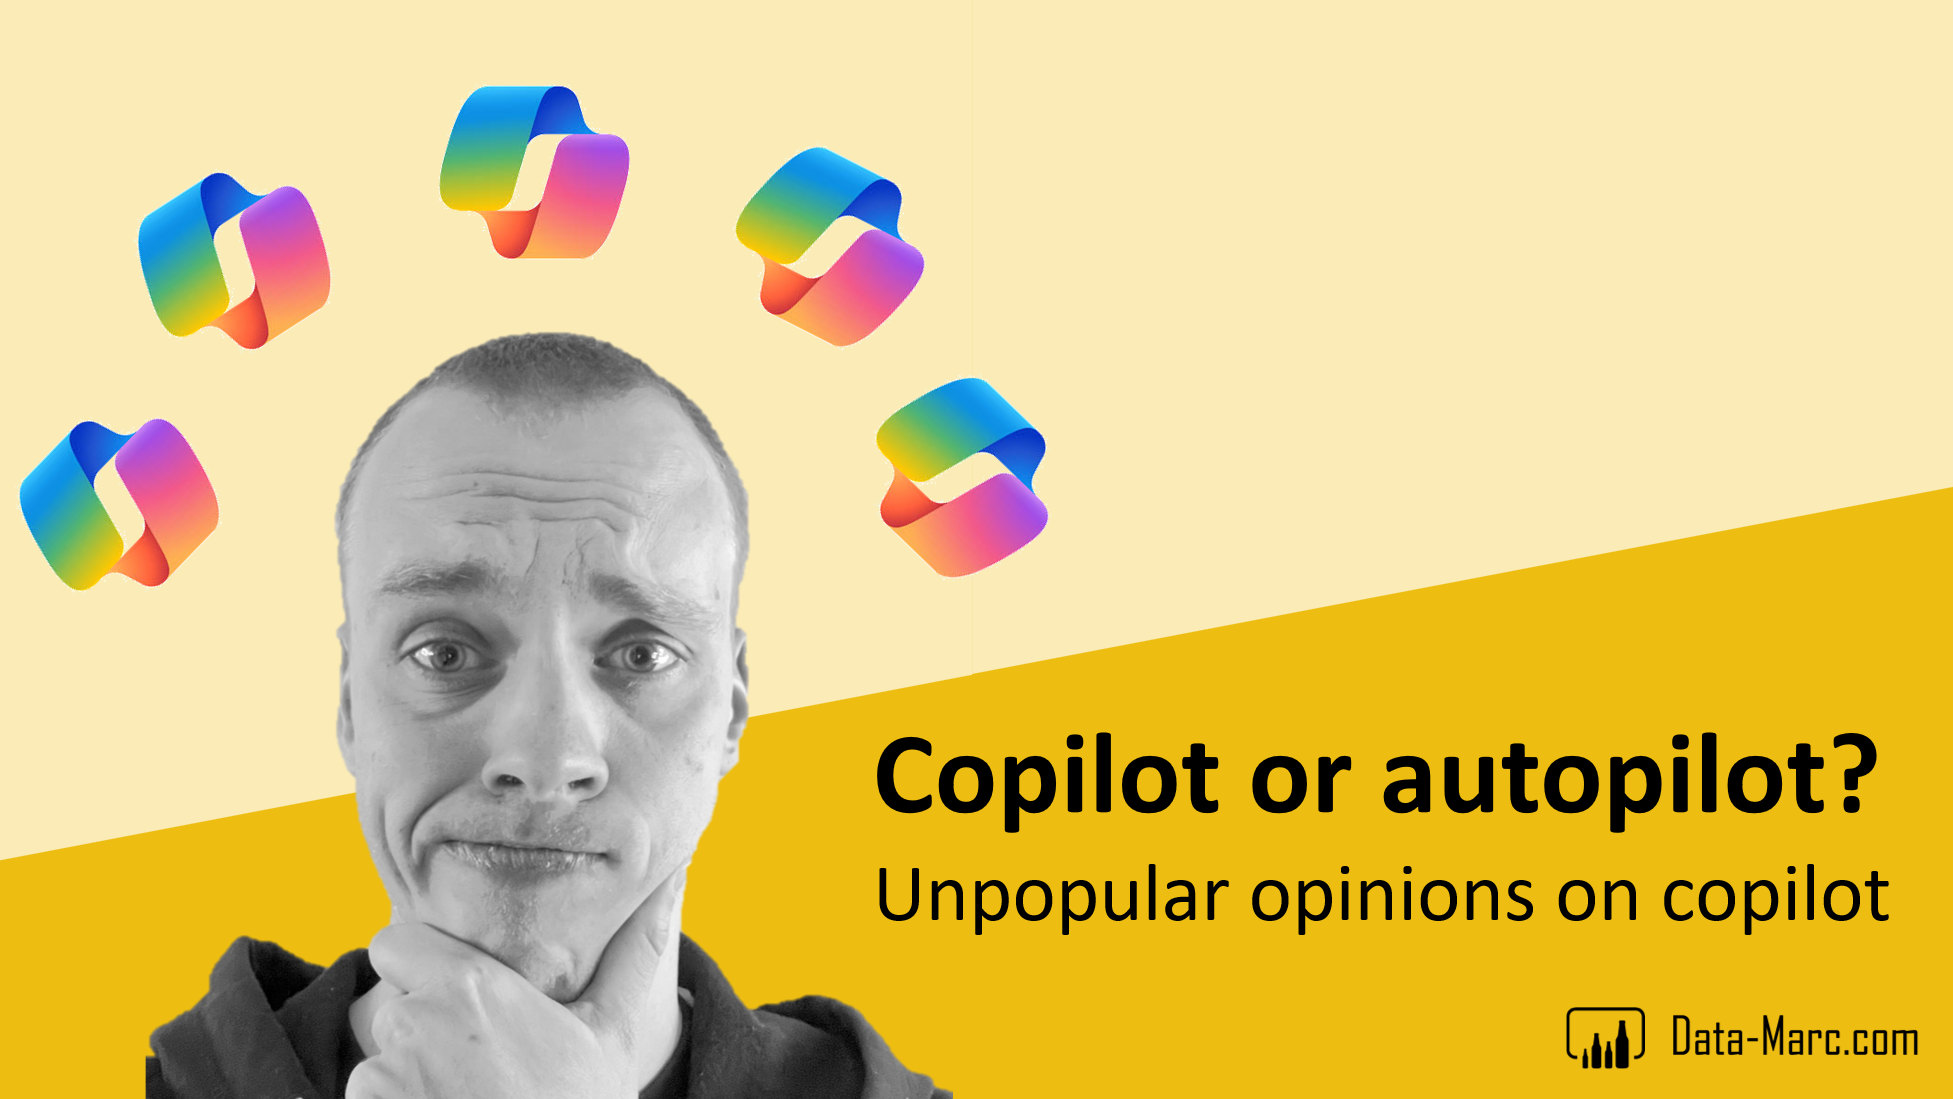 Copilot or autopilot? Unpopular opinions on copilot